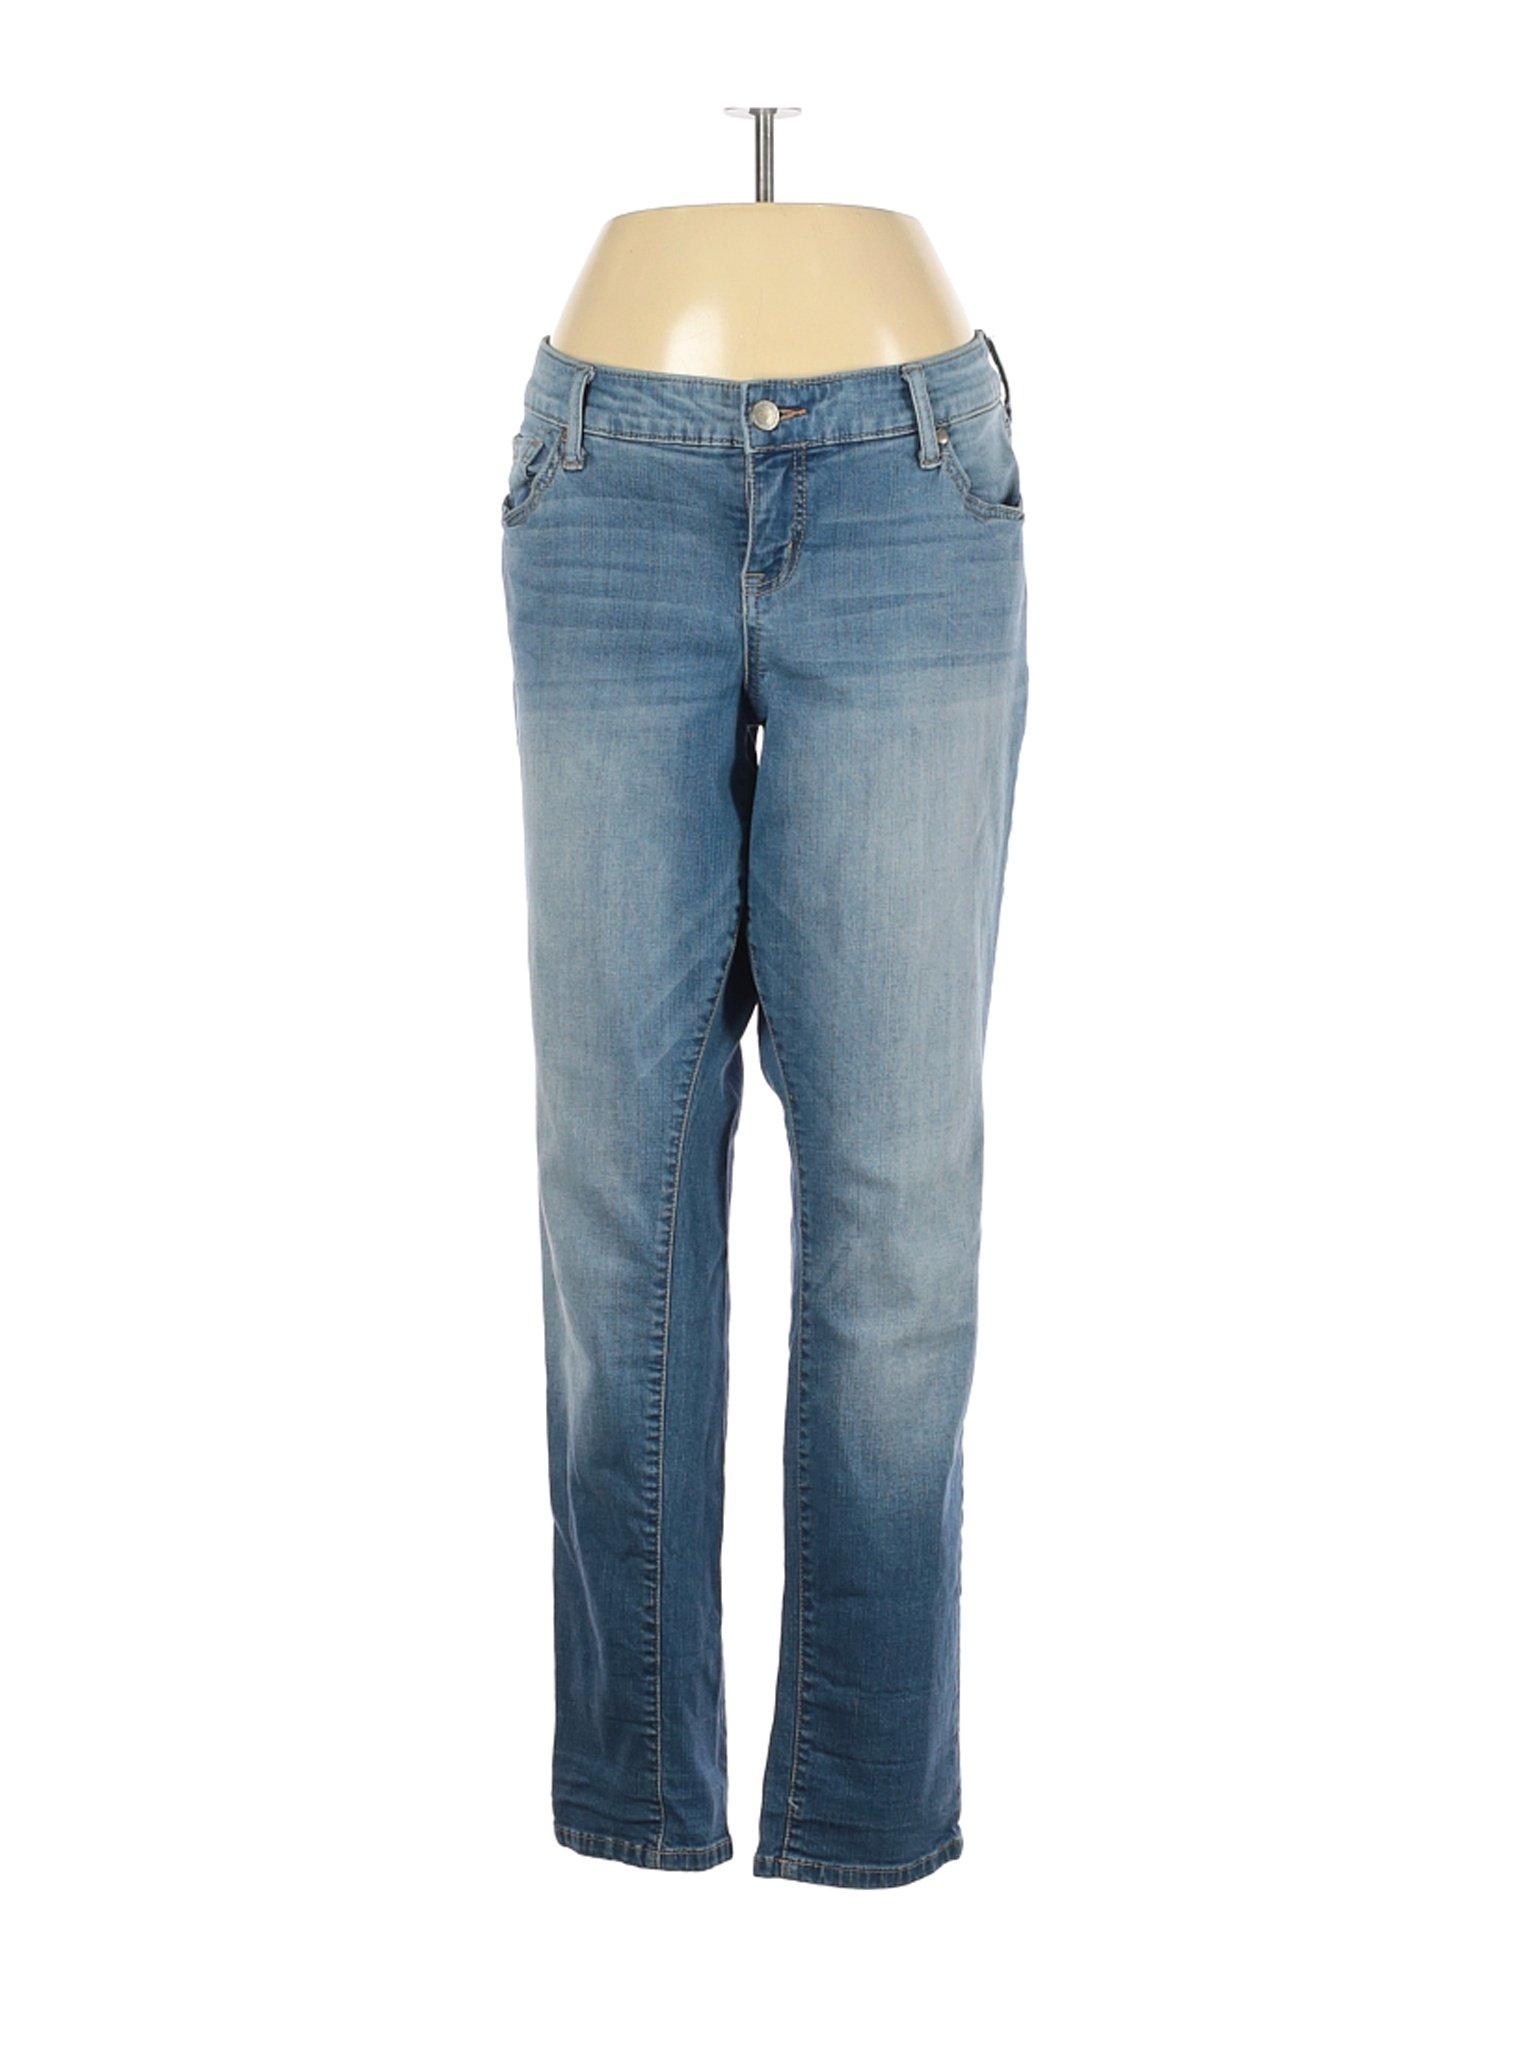 Torrid Women Blue Jeans 12 Plus | eBay